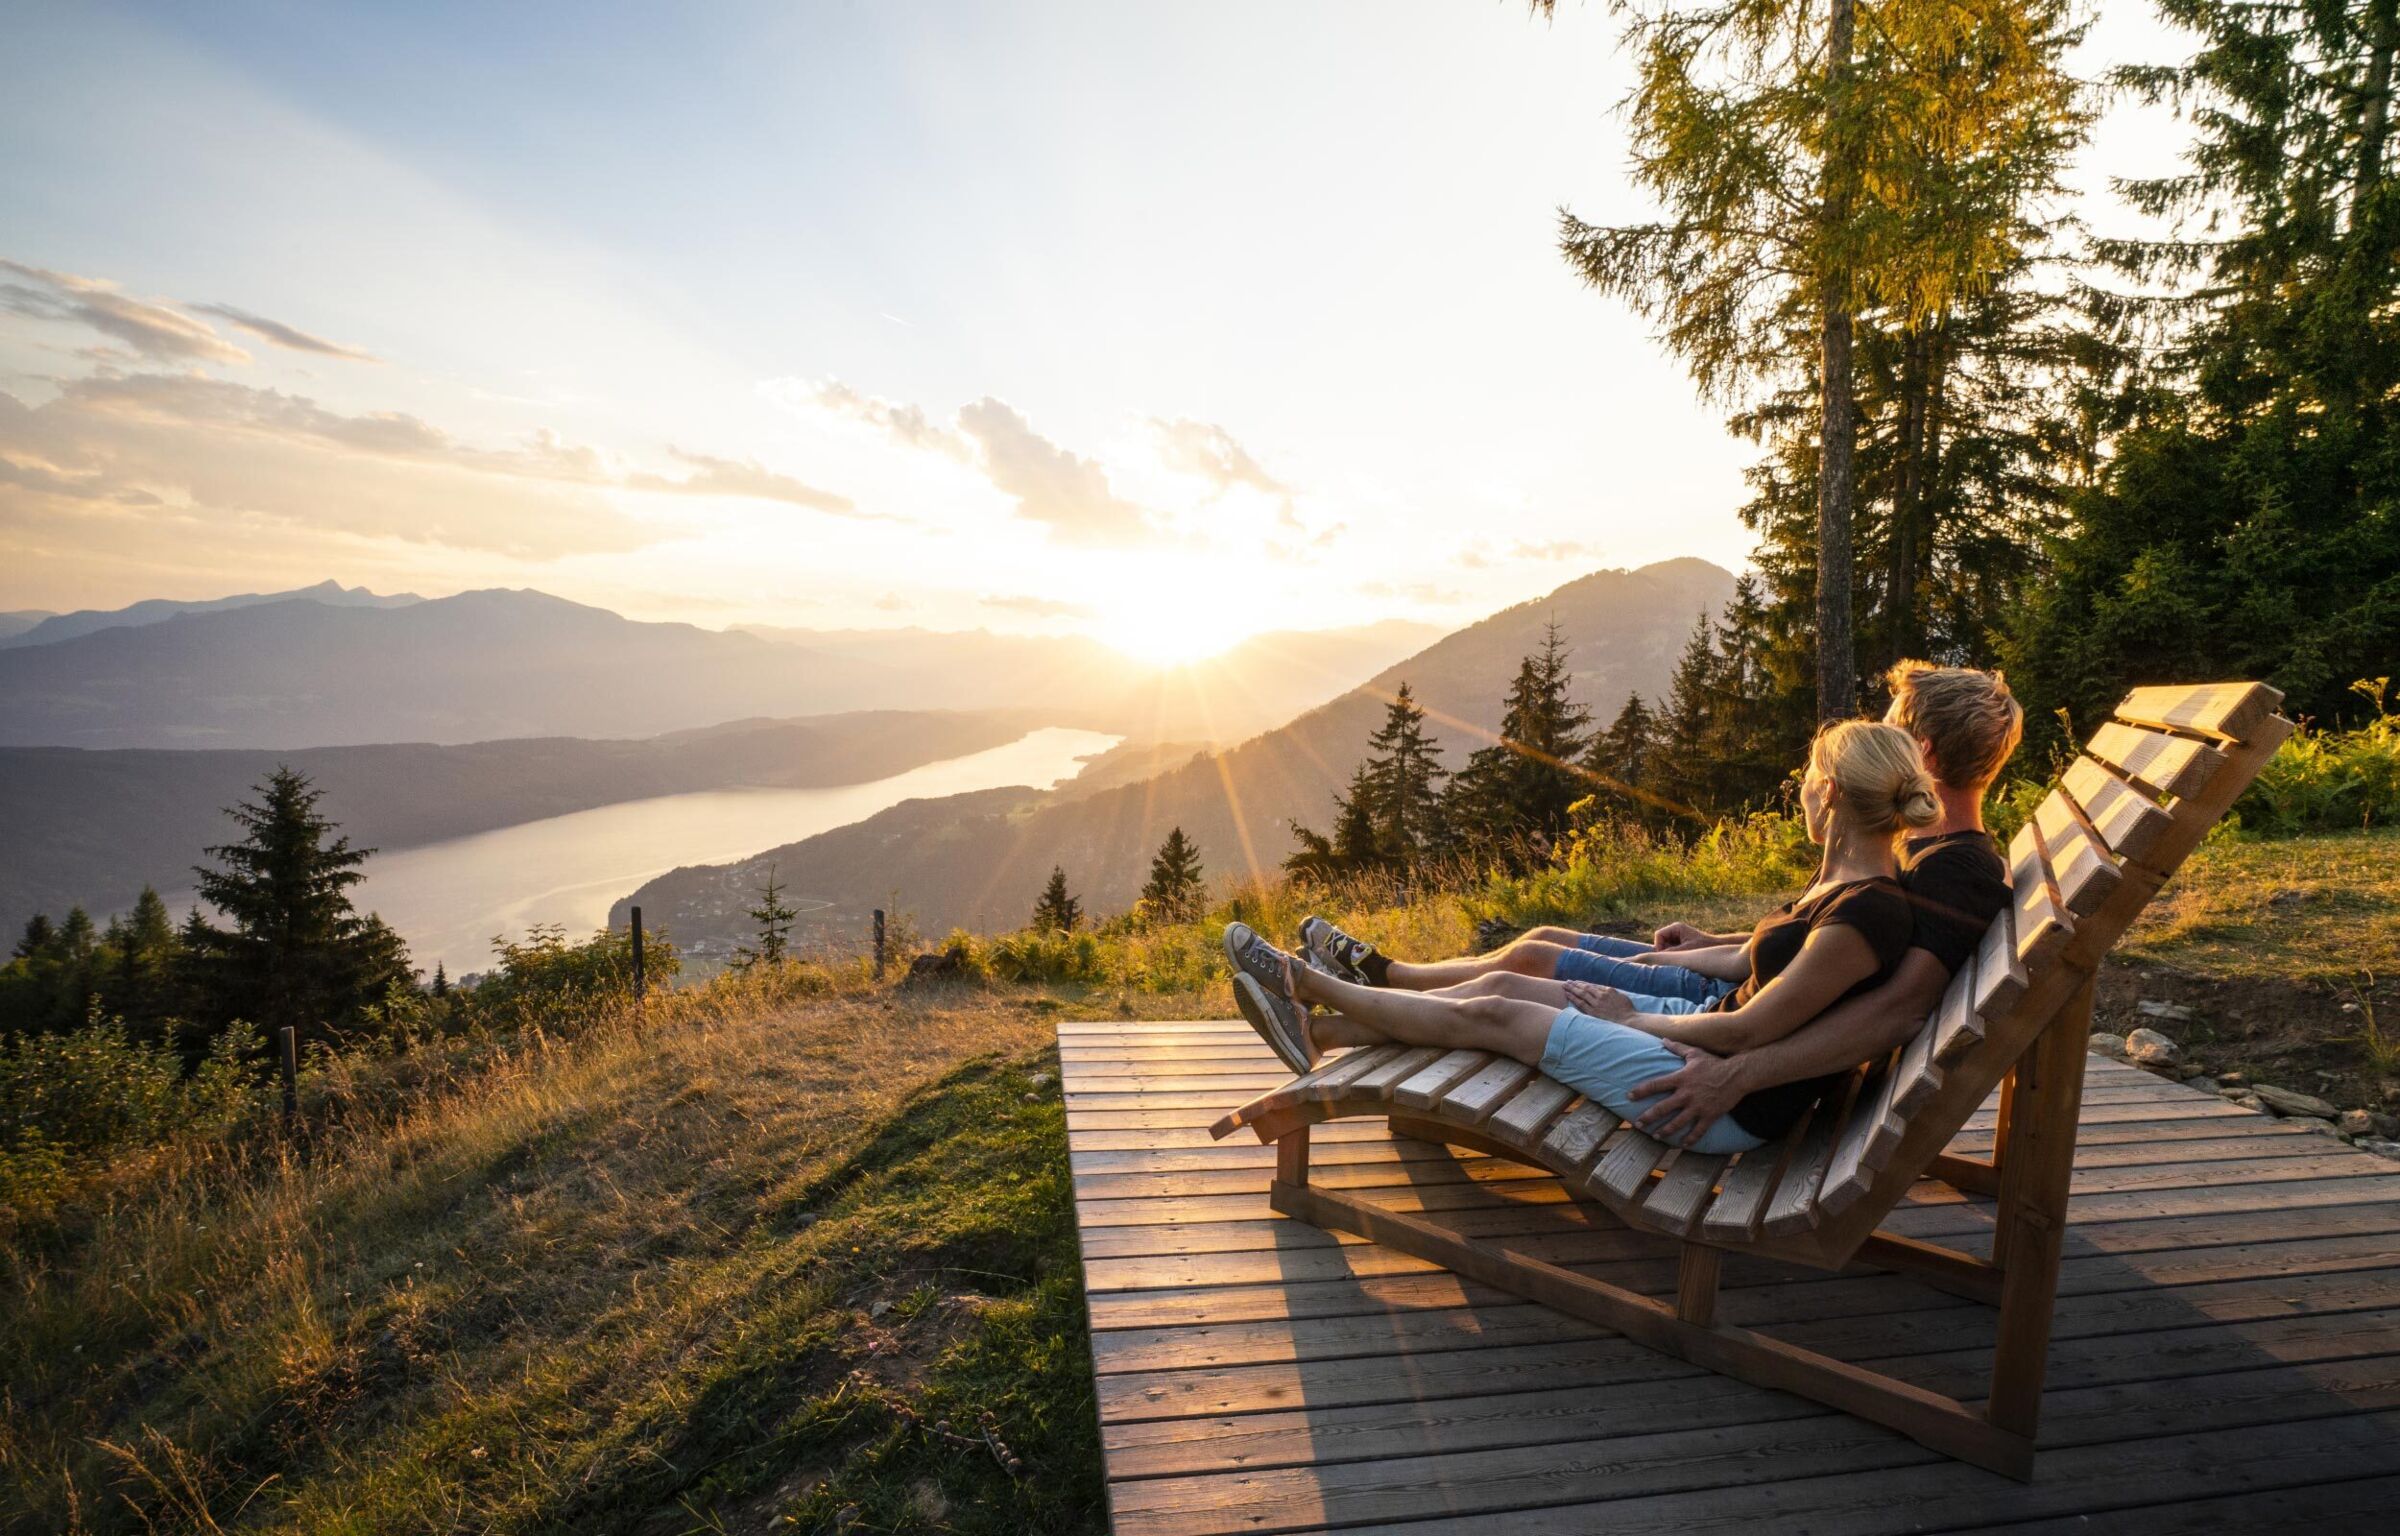 Una coppia siede su una panchina di legno e si gode l'alba in montagna.